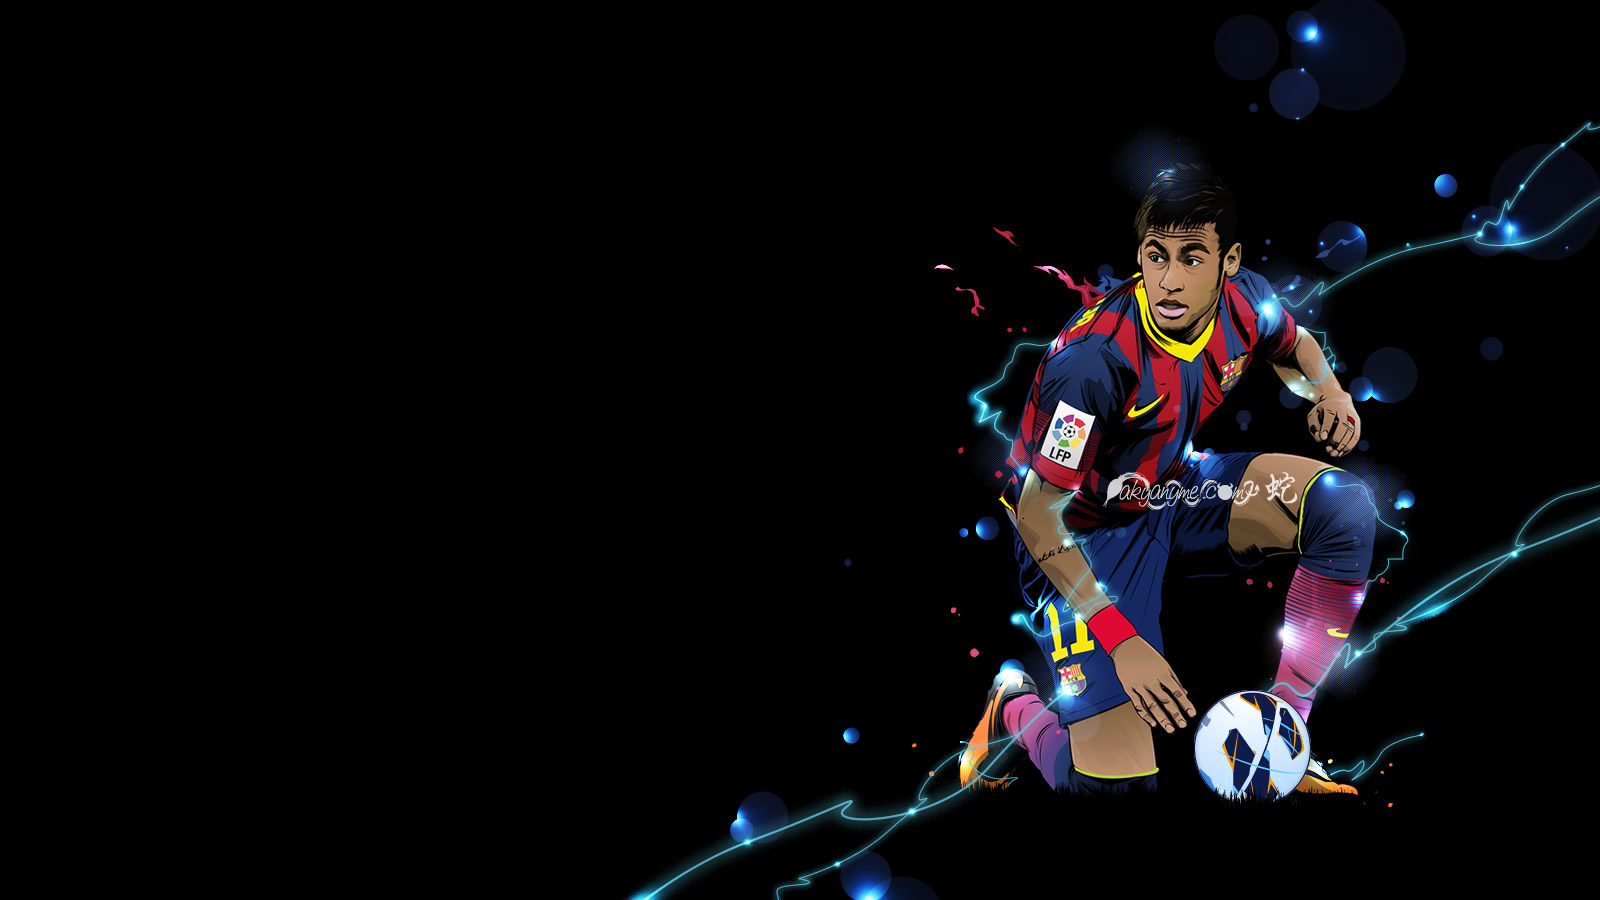 Neymar HD Wallpaper Image Pictures